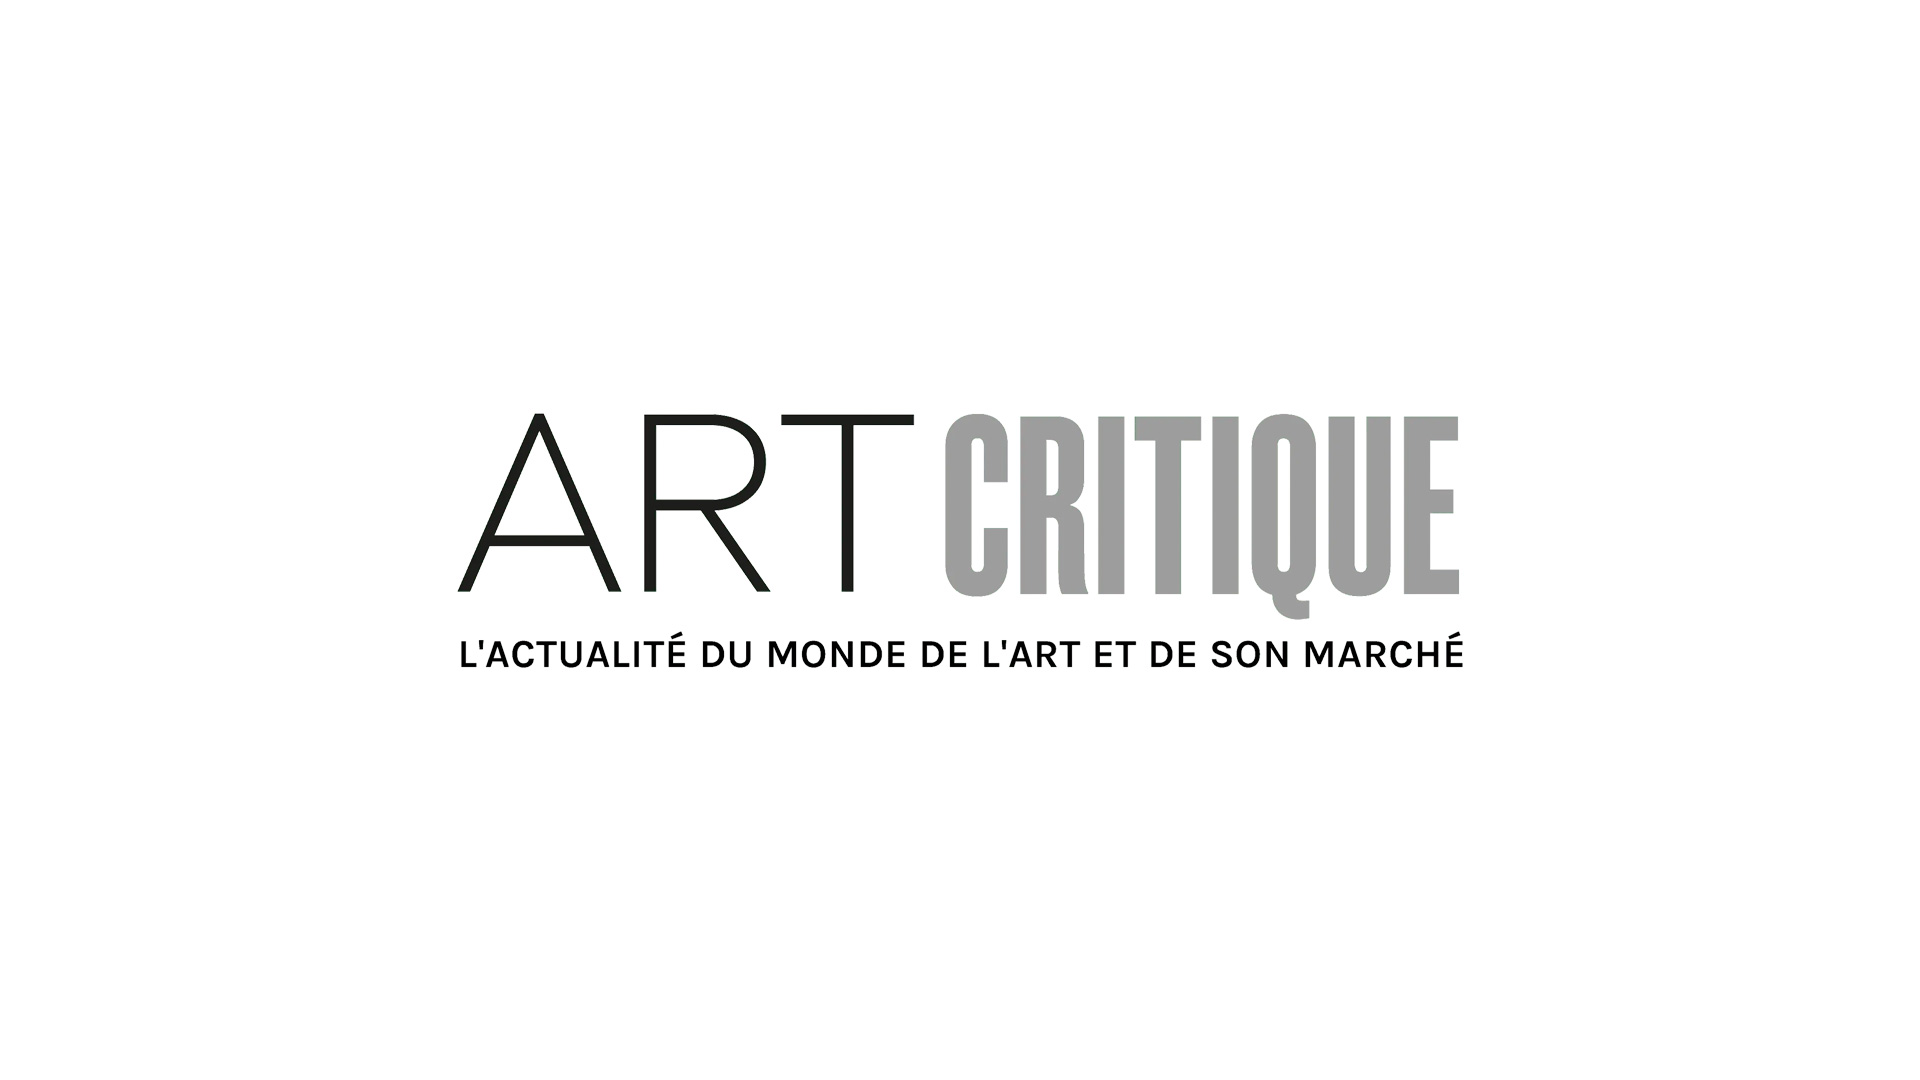 Faire signe : Isidore Isou au Centre Pompidou